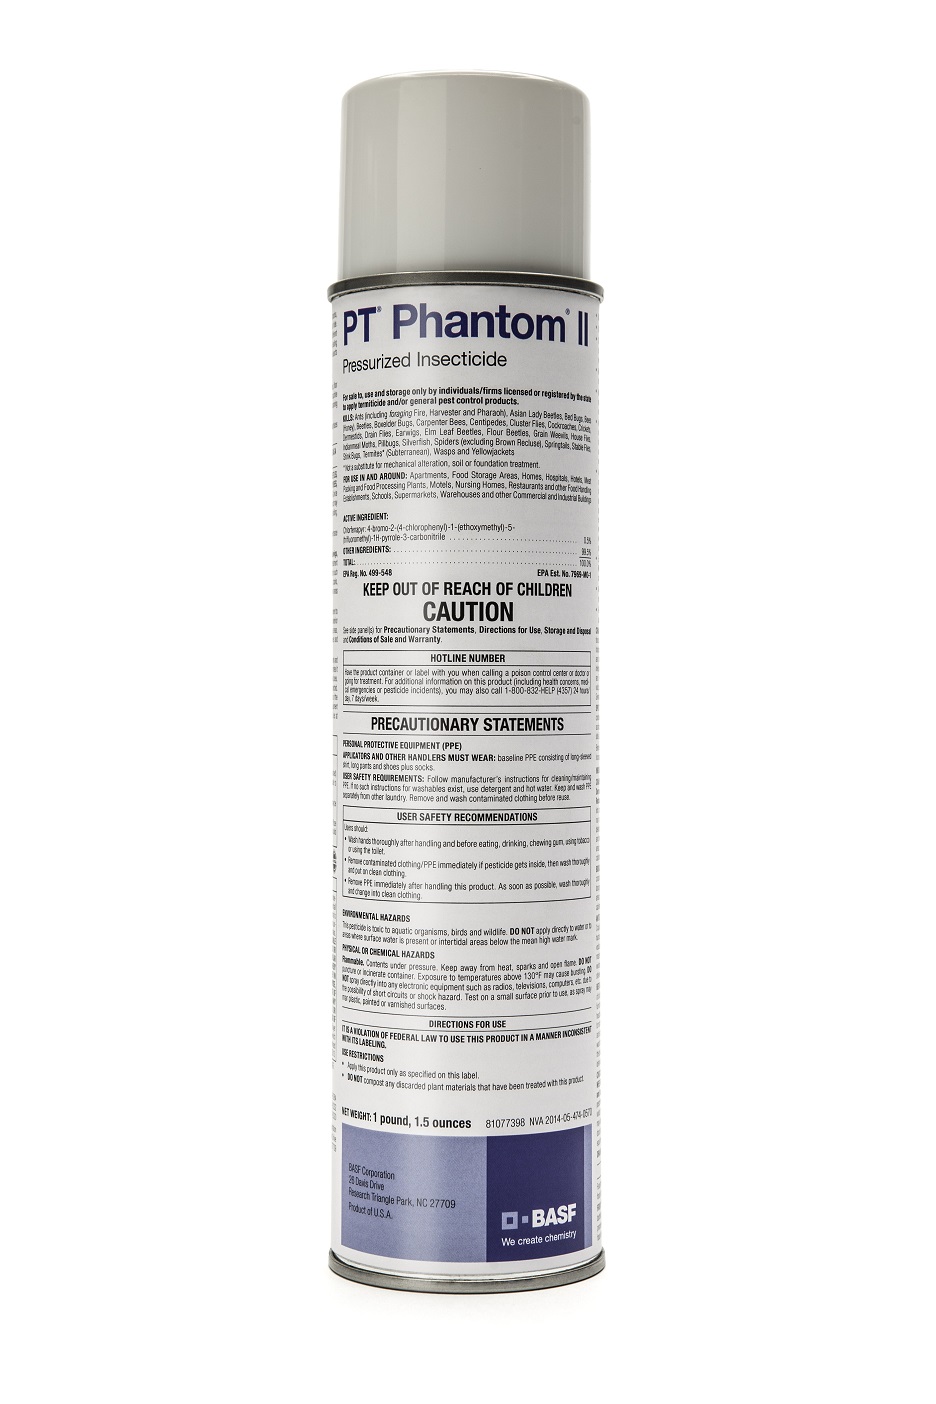 PHANTOM-F crauti-frecce/pesce persico 32g 